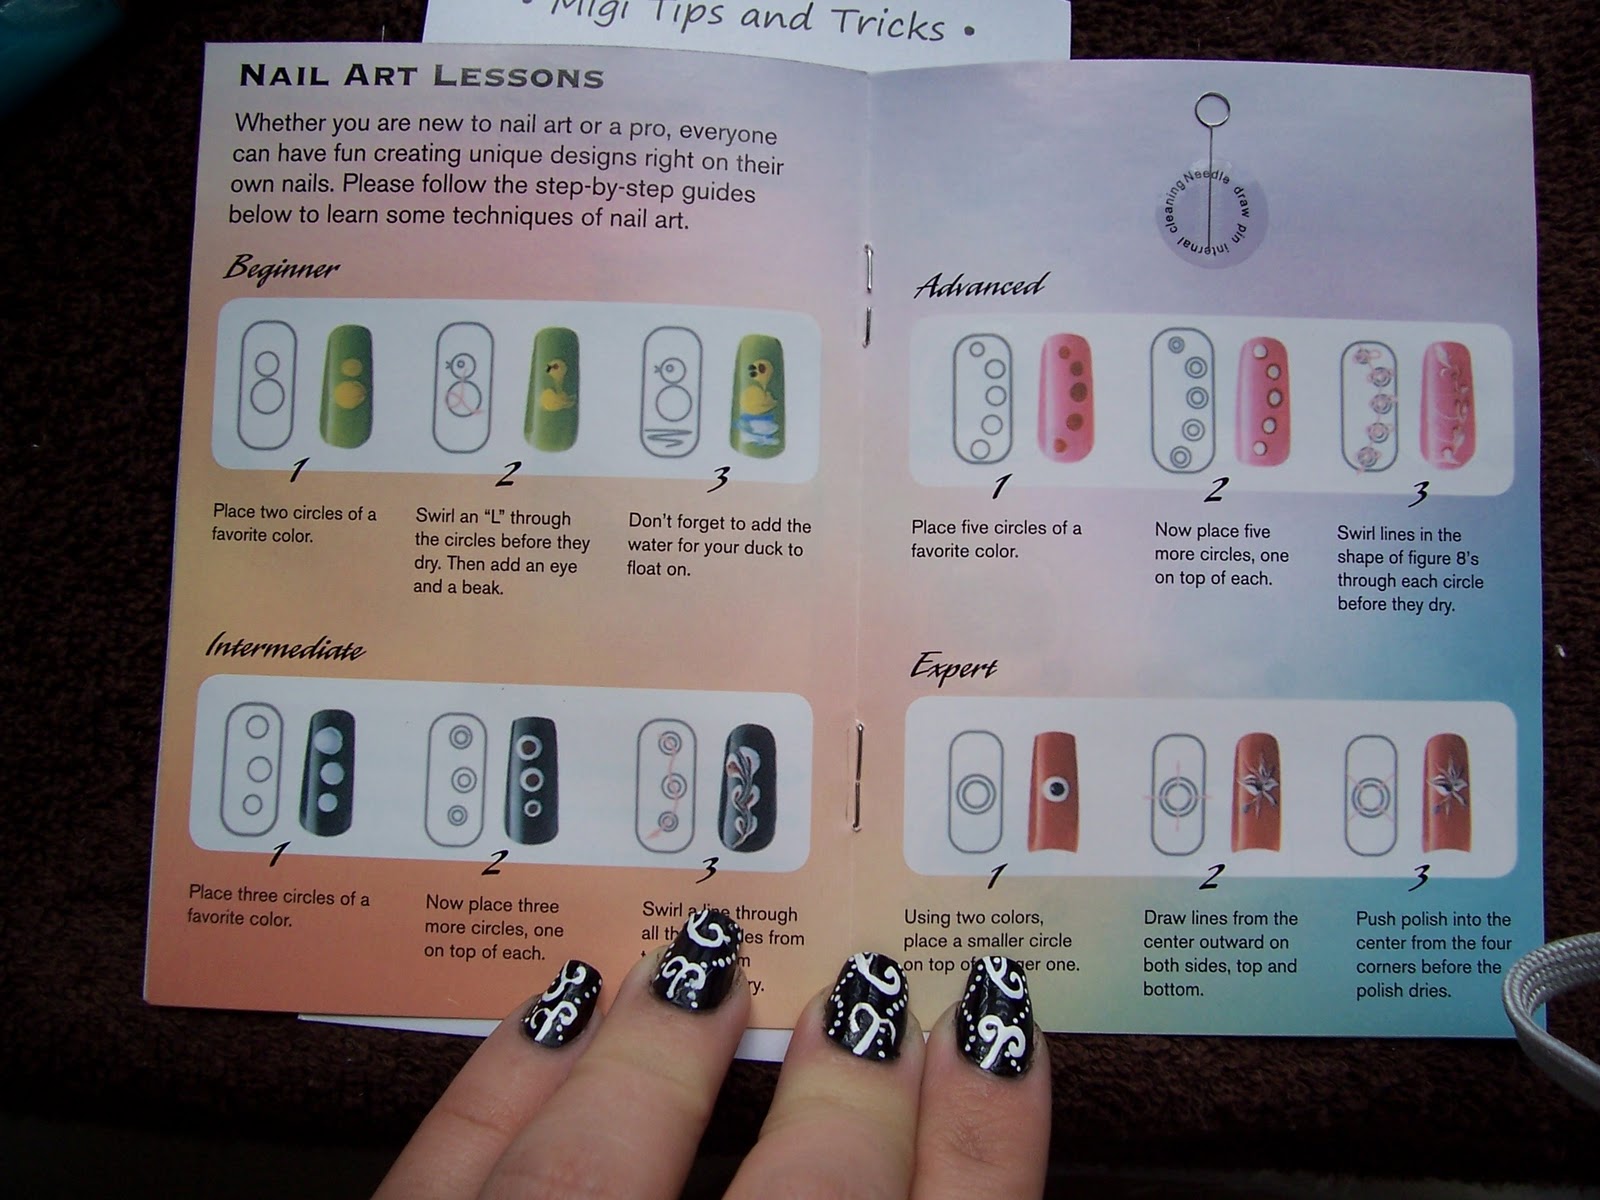 migi nail art, nail art, nail art kits, 3d nail art, nail art design, how to do nail art, nail art pens, simple nail art, nail art designs, nail art designs gallery, pictures of nail art, nail art ideas, nails art, nails art design, nail art magazine, nail art images-72